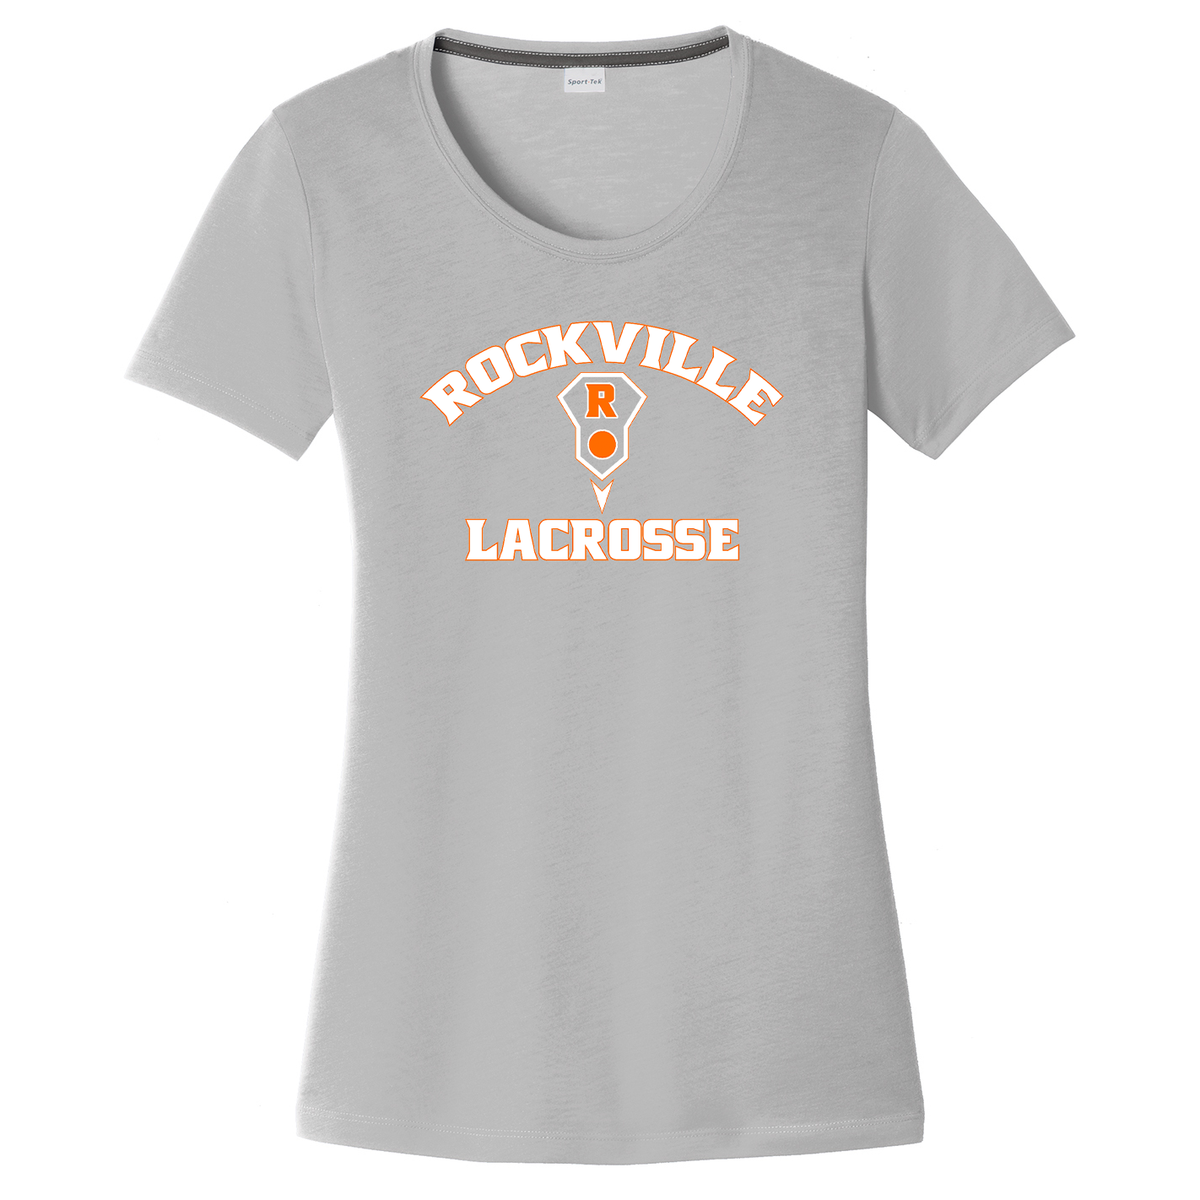 Rockville HS Girls Lacrosse Women's CottonTouch Performance T-Shirt